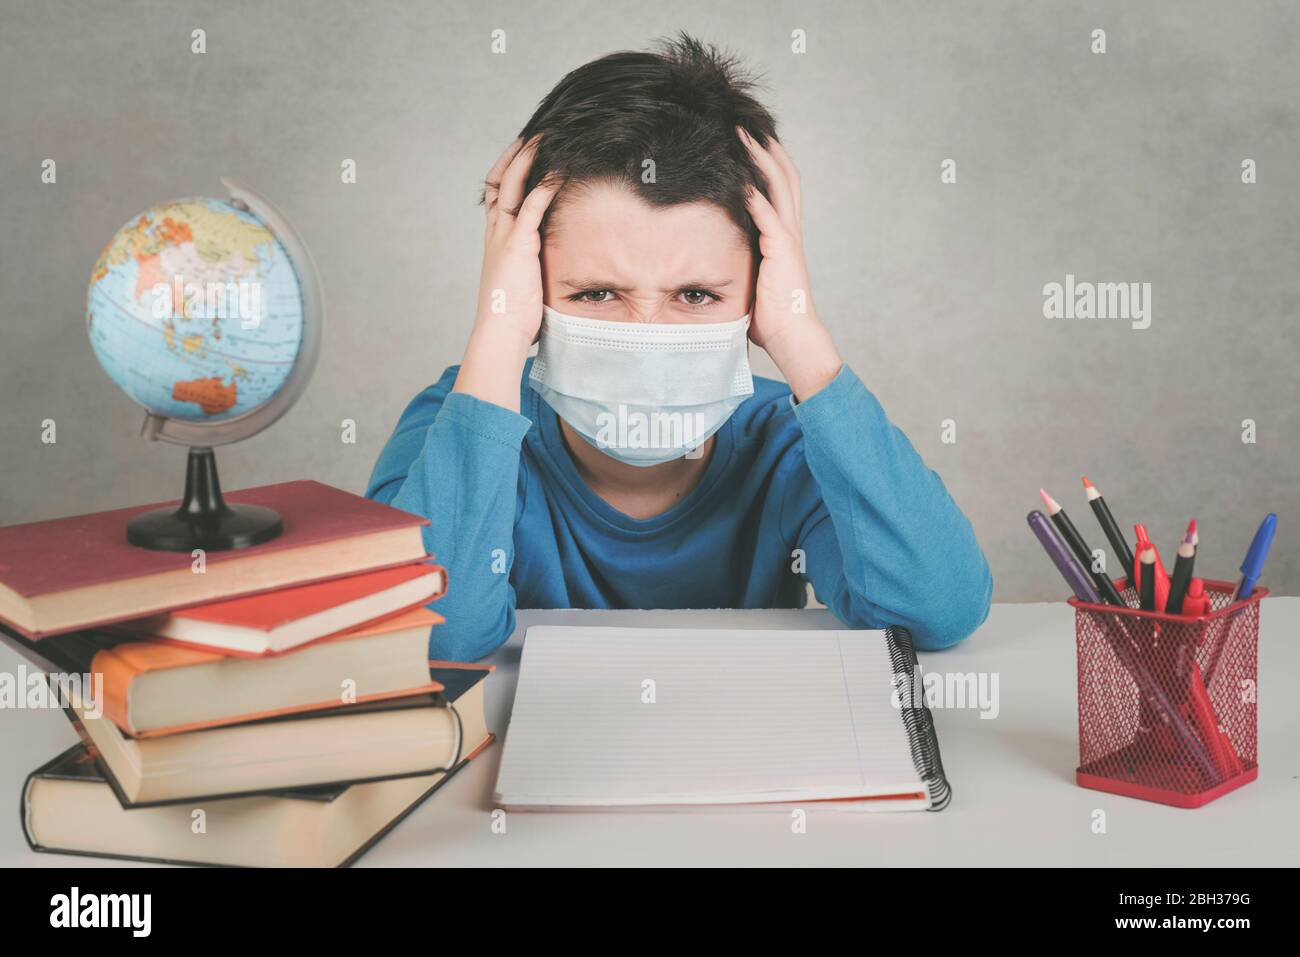 Bambino arrabbiato che indossa la maschera medica si è stuperso di fare i compiti nella quarantena su sfondo grigio Foto Stock